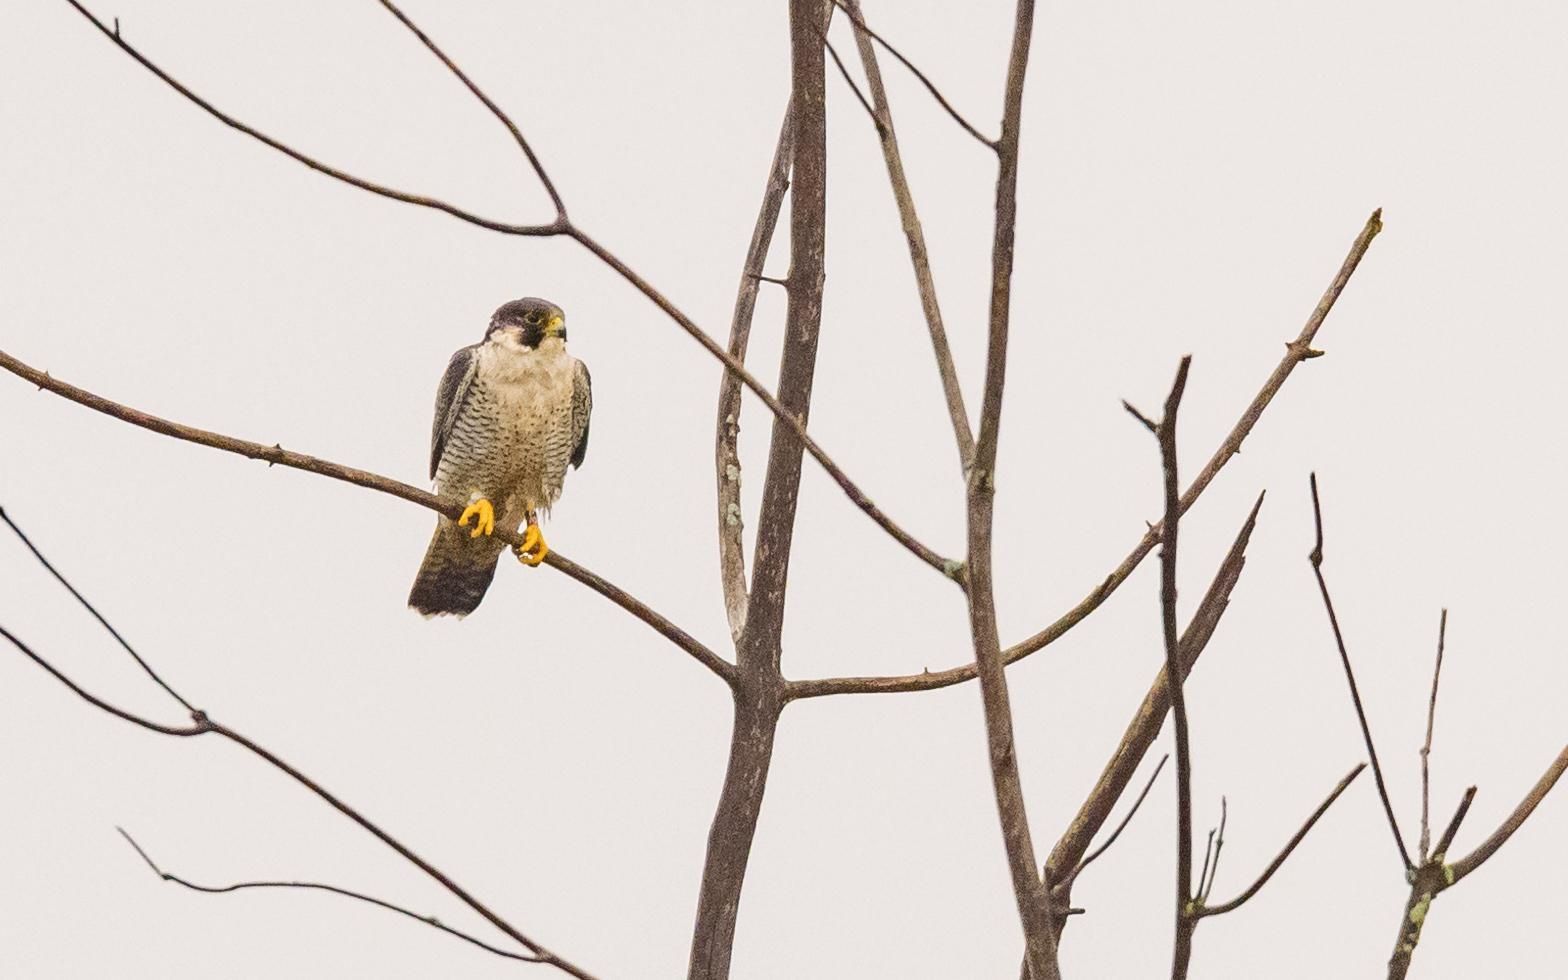 Peregrine Falcon Photo by Keshava Mysore